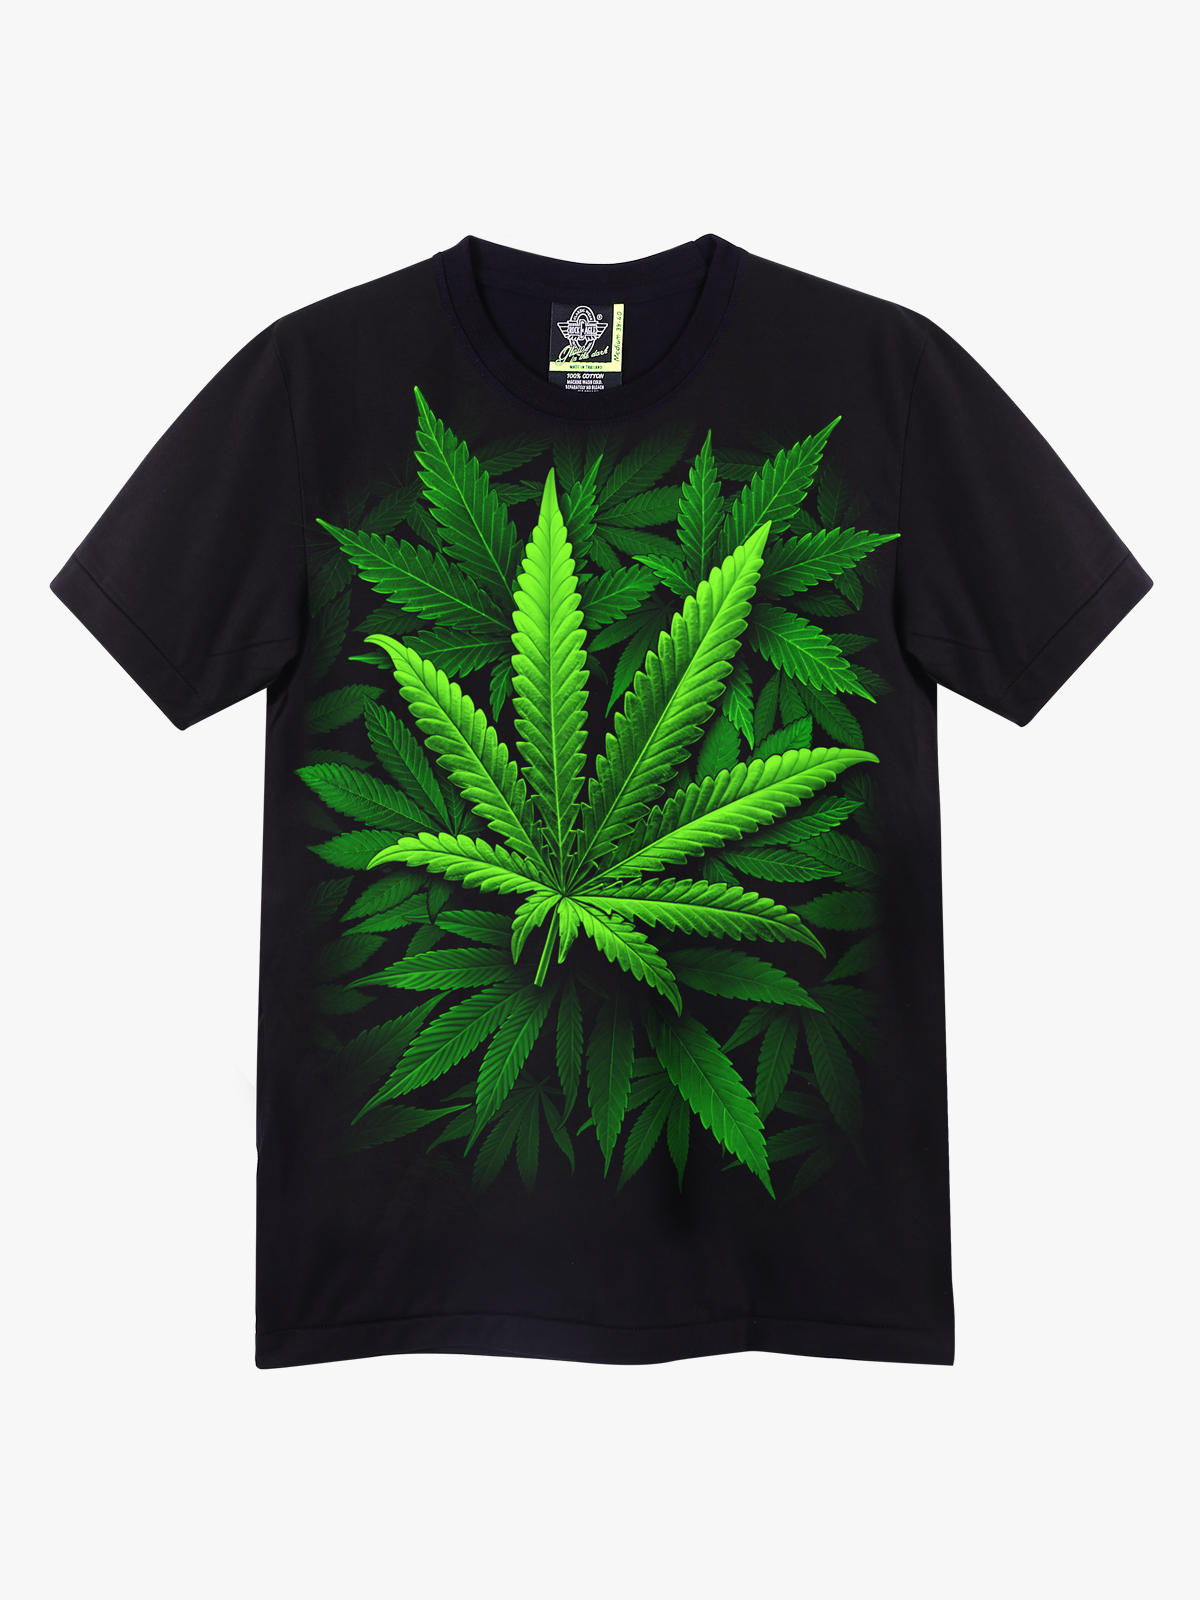 Одежда с символикой марихуаны последствия от передозировки марихуаной